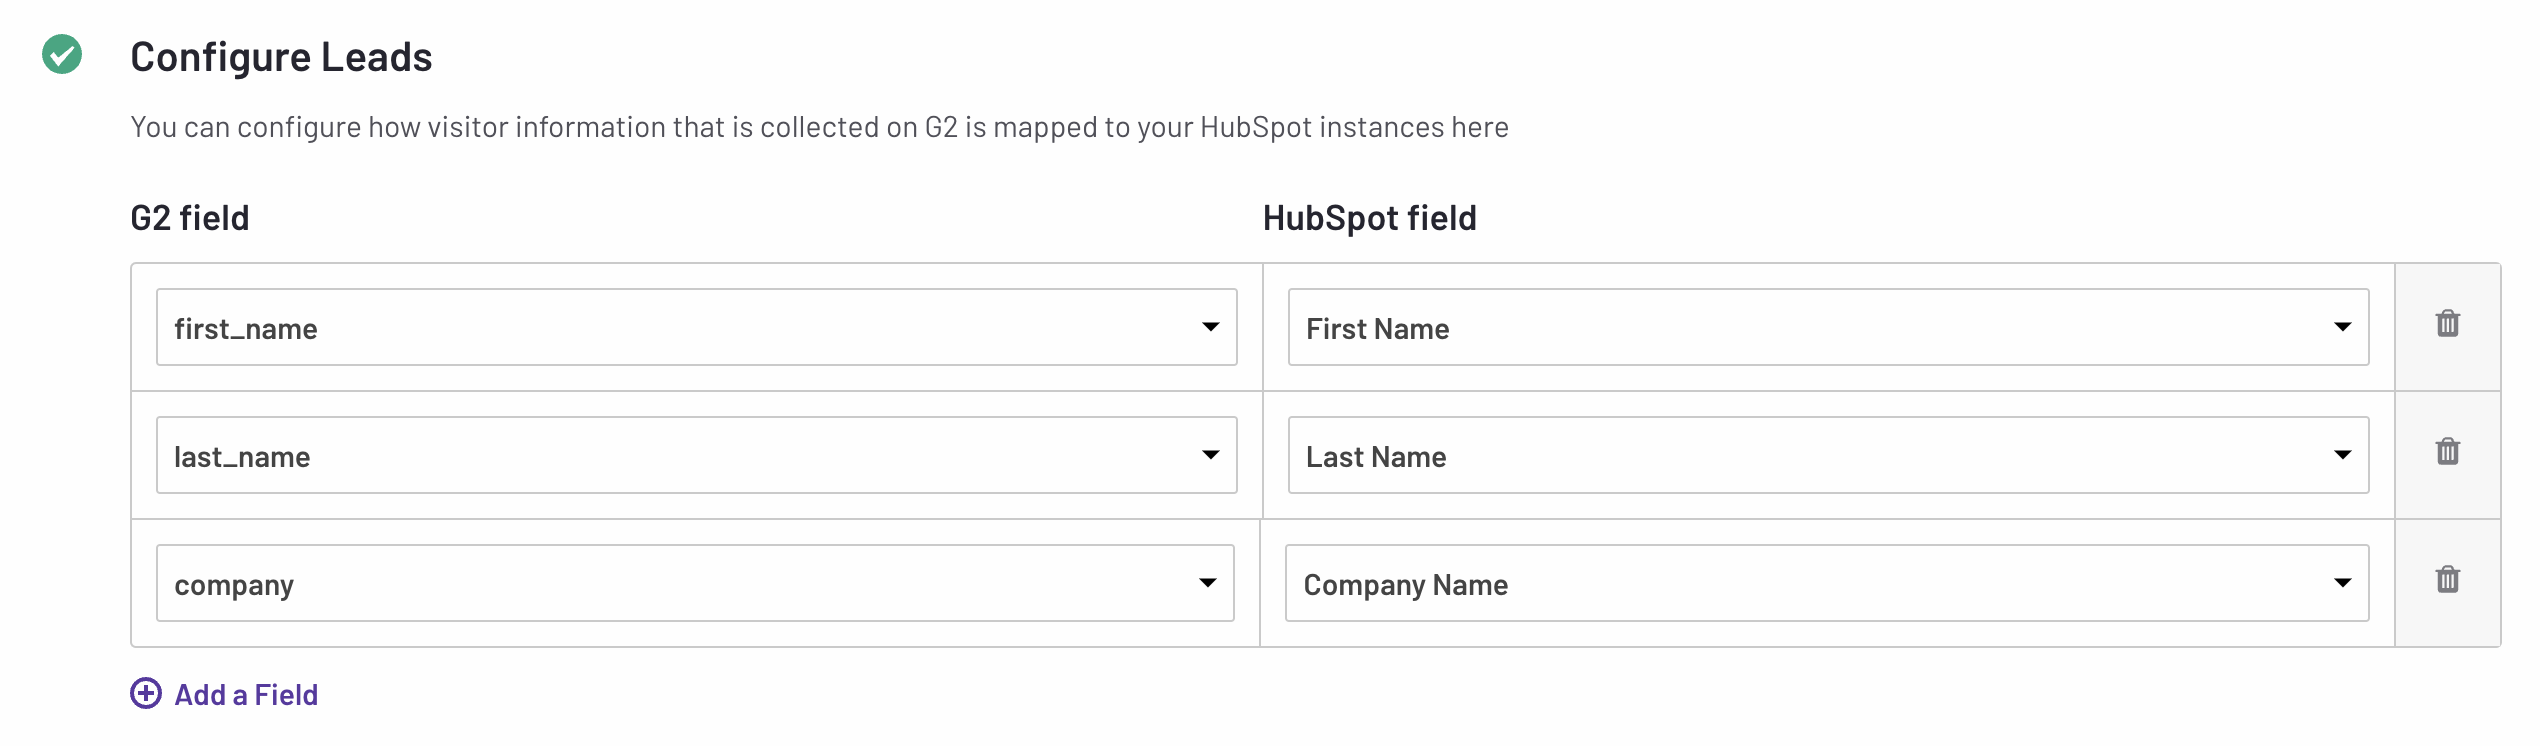 hubspot configure leads fields